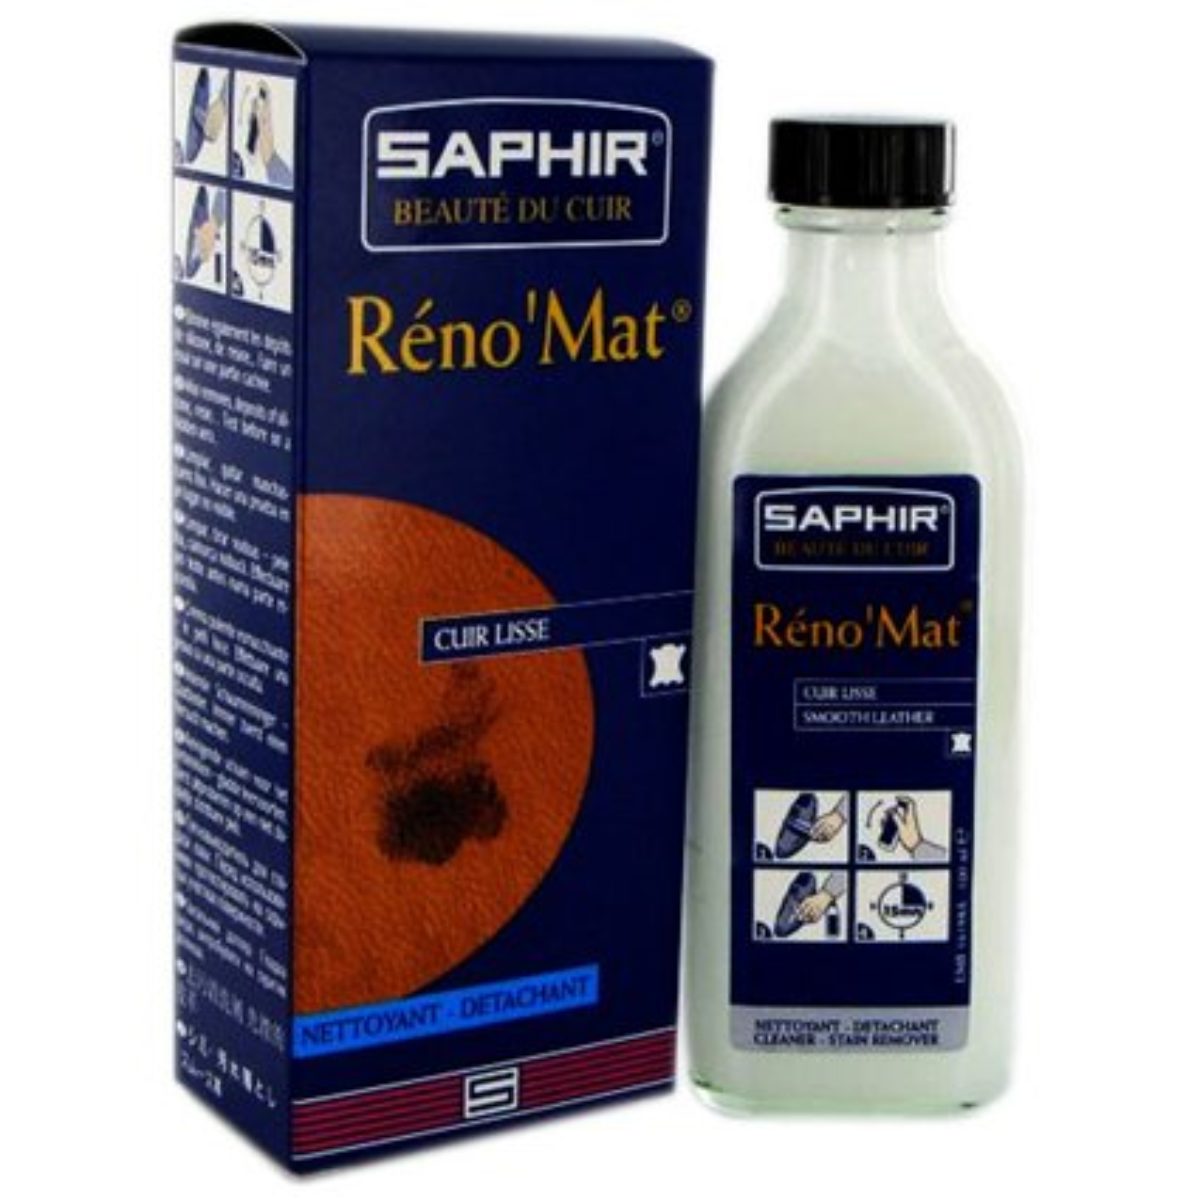 Reno mat. Saphir очиститель Reno’mat. Renomat от Saphir 500 мл. Пропитка Saphir Reno mat. Сапфир Рено мат.